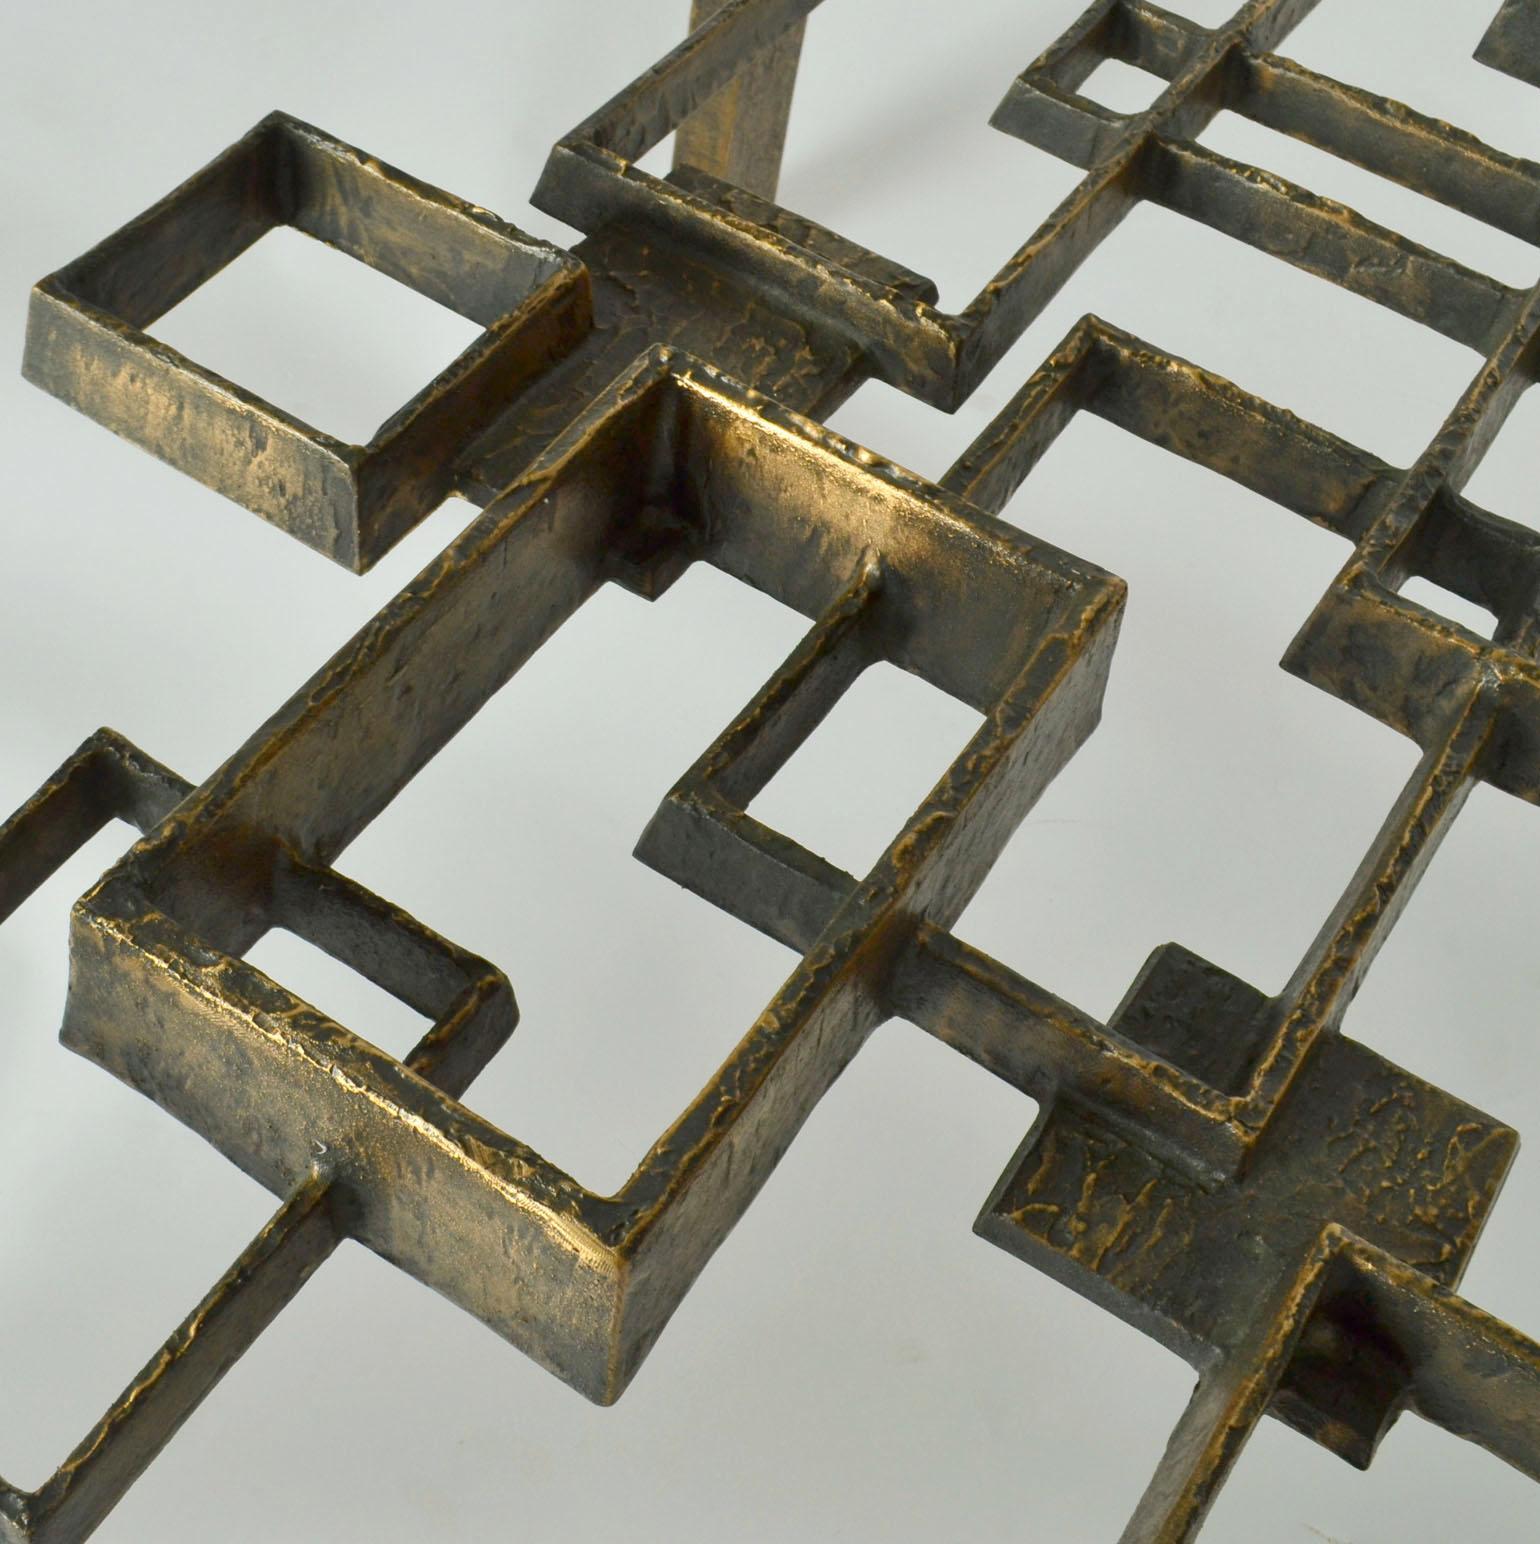 Cette table basse sculpturale unique en bronze coulé est une œuvre d'art. C'est un chef-d'œuvre de conception et d'exécution réalisé par trois maîtres fondeurs hautement qualifiés dans les années 1970. Le flottement des formes carrées et